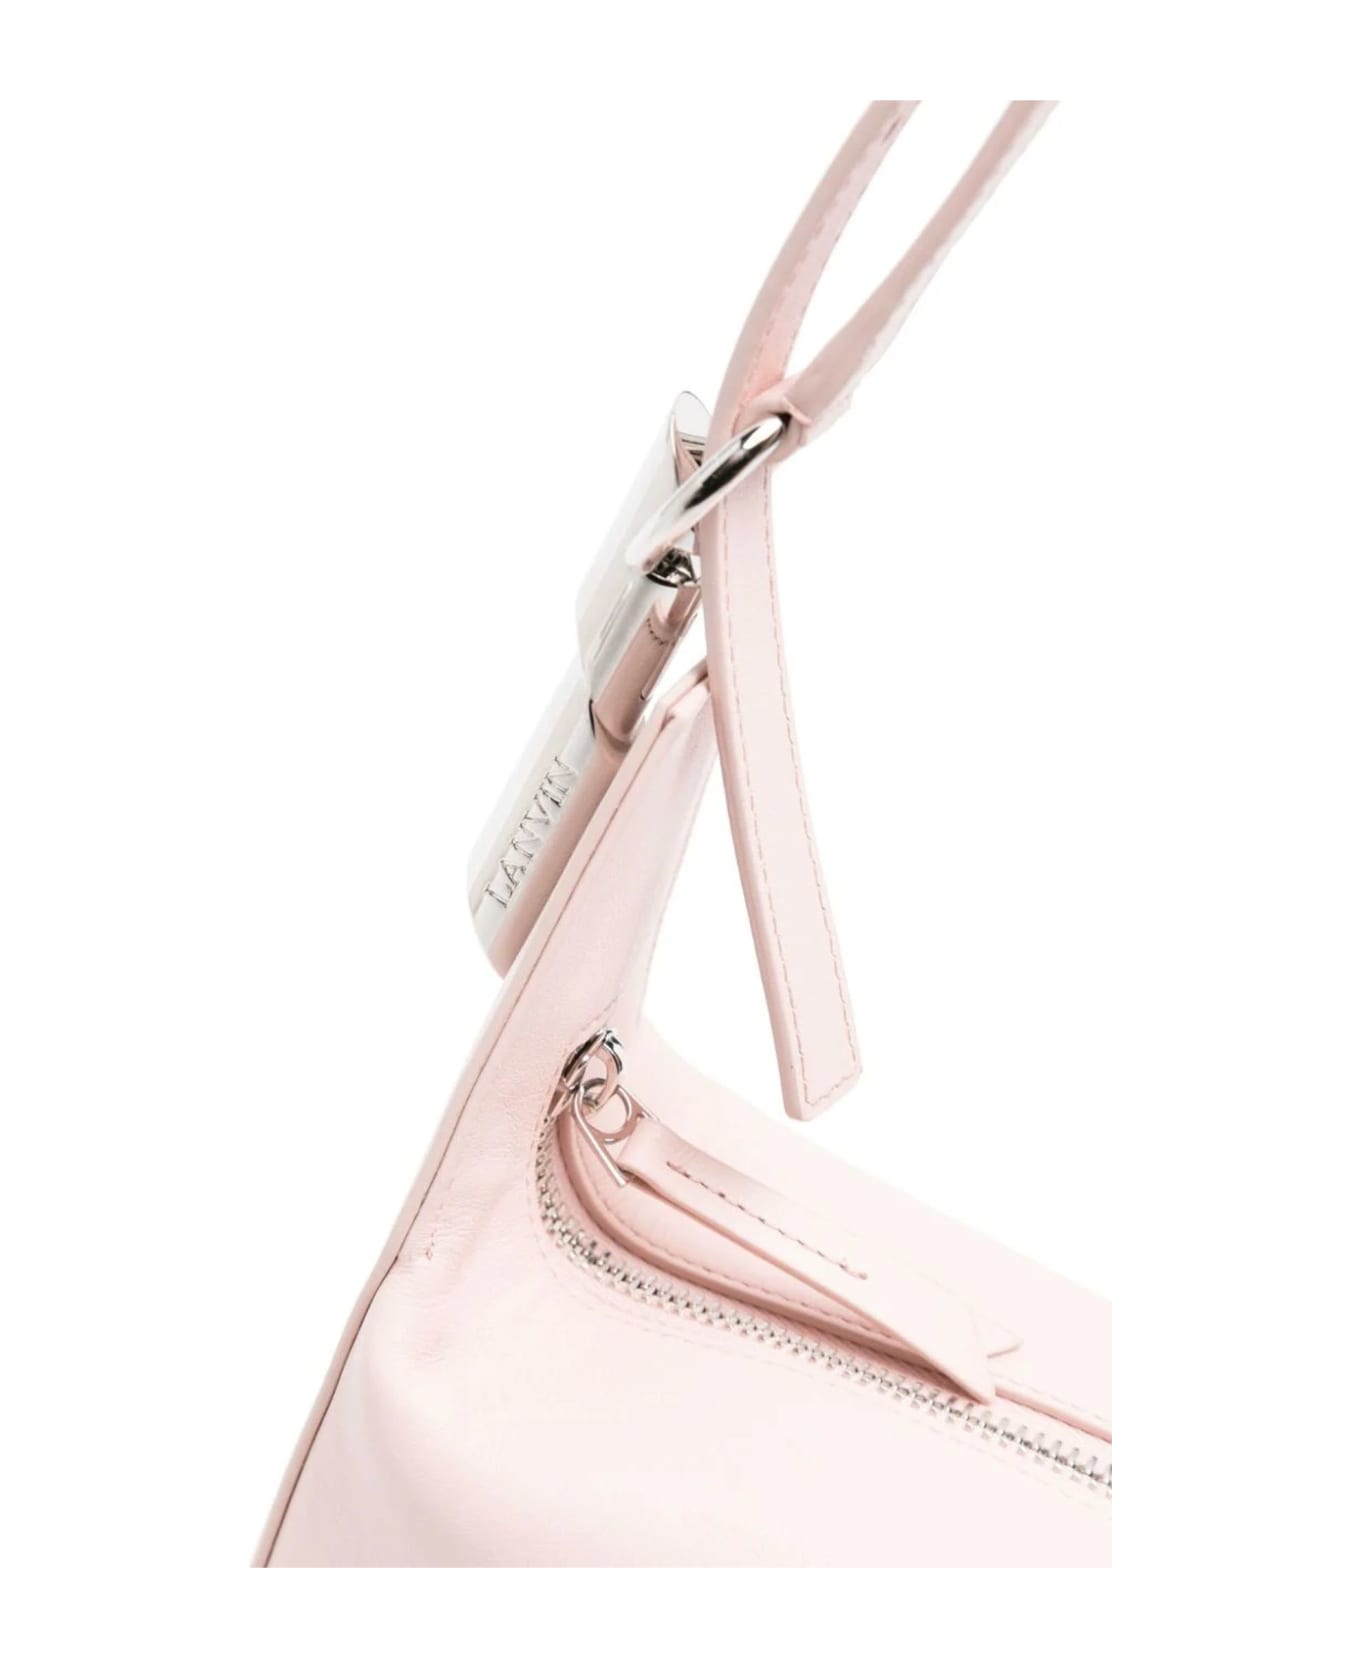 Lanvin Light Pink Tasche Leather Shoulder Bag - Pink ショルダーバッグ